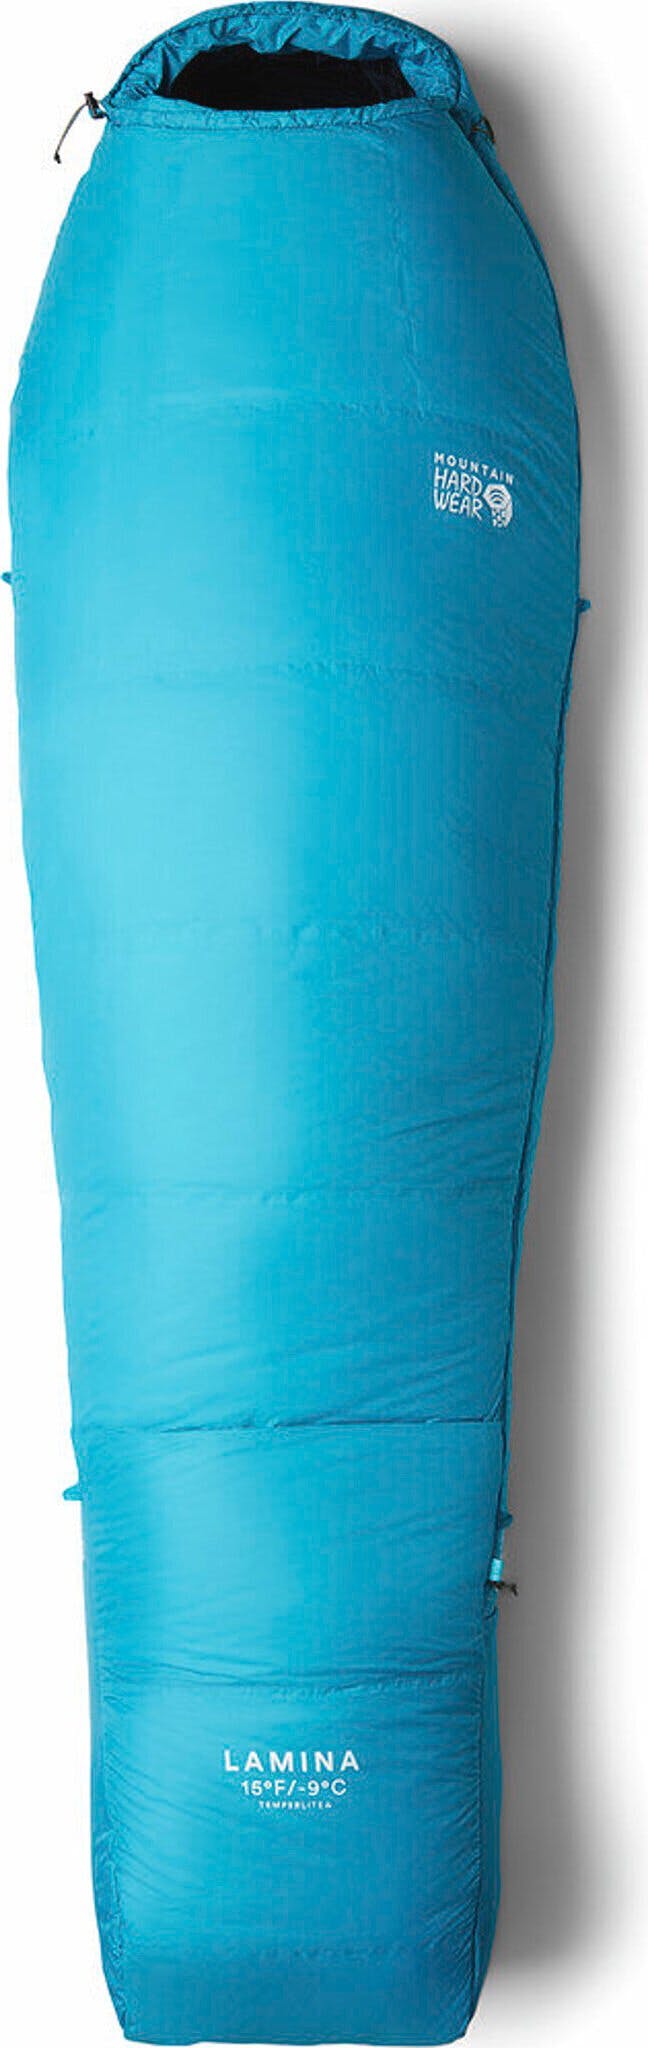 Product image for Lamina Short Sleeping Bag -15°F/-9°C - Unisex